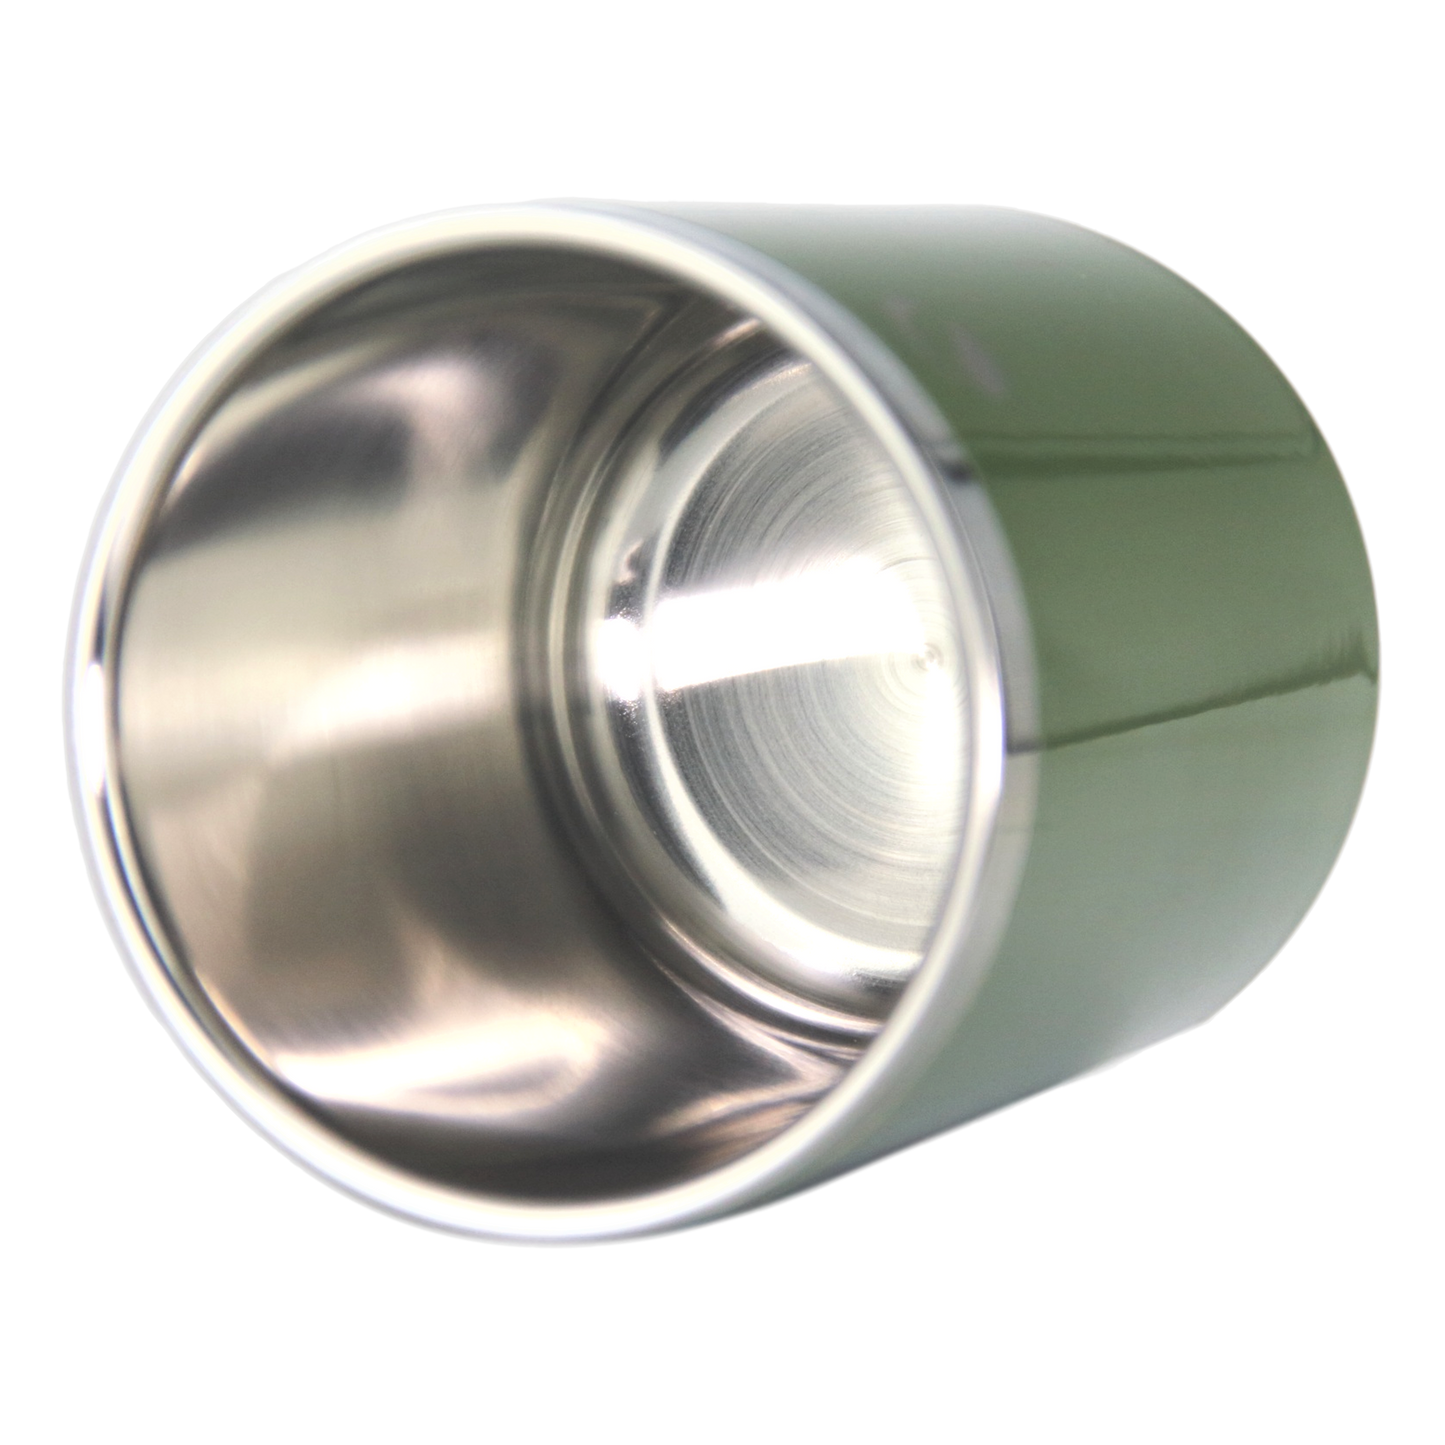 DRINCO- 10oz Vacuum Insulated Tumbler